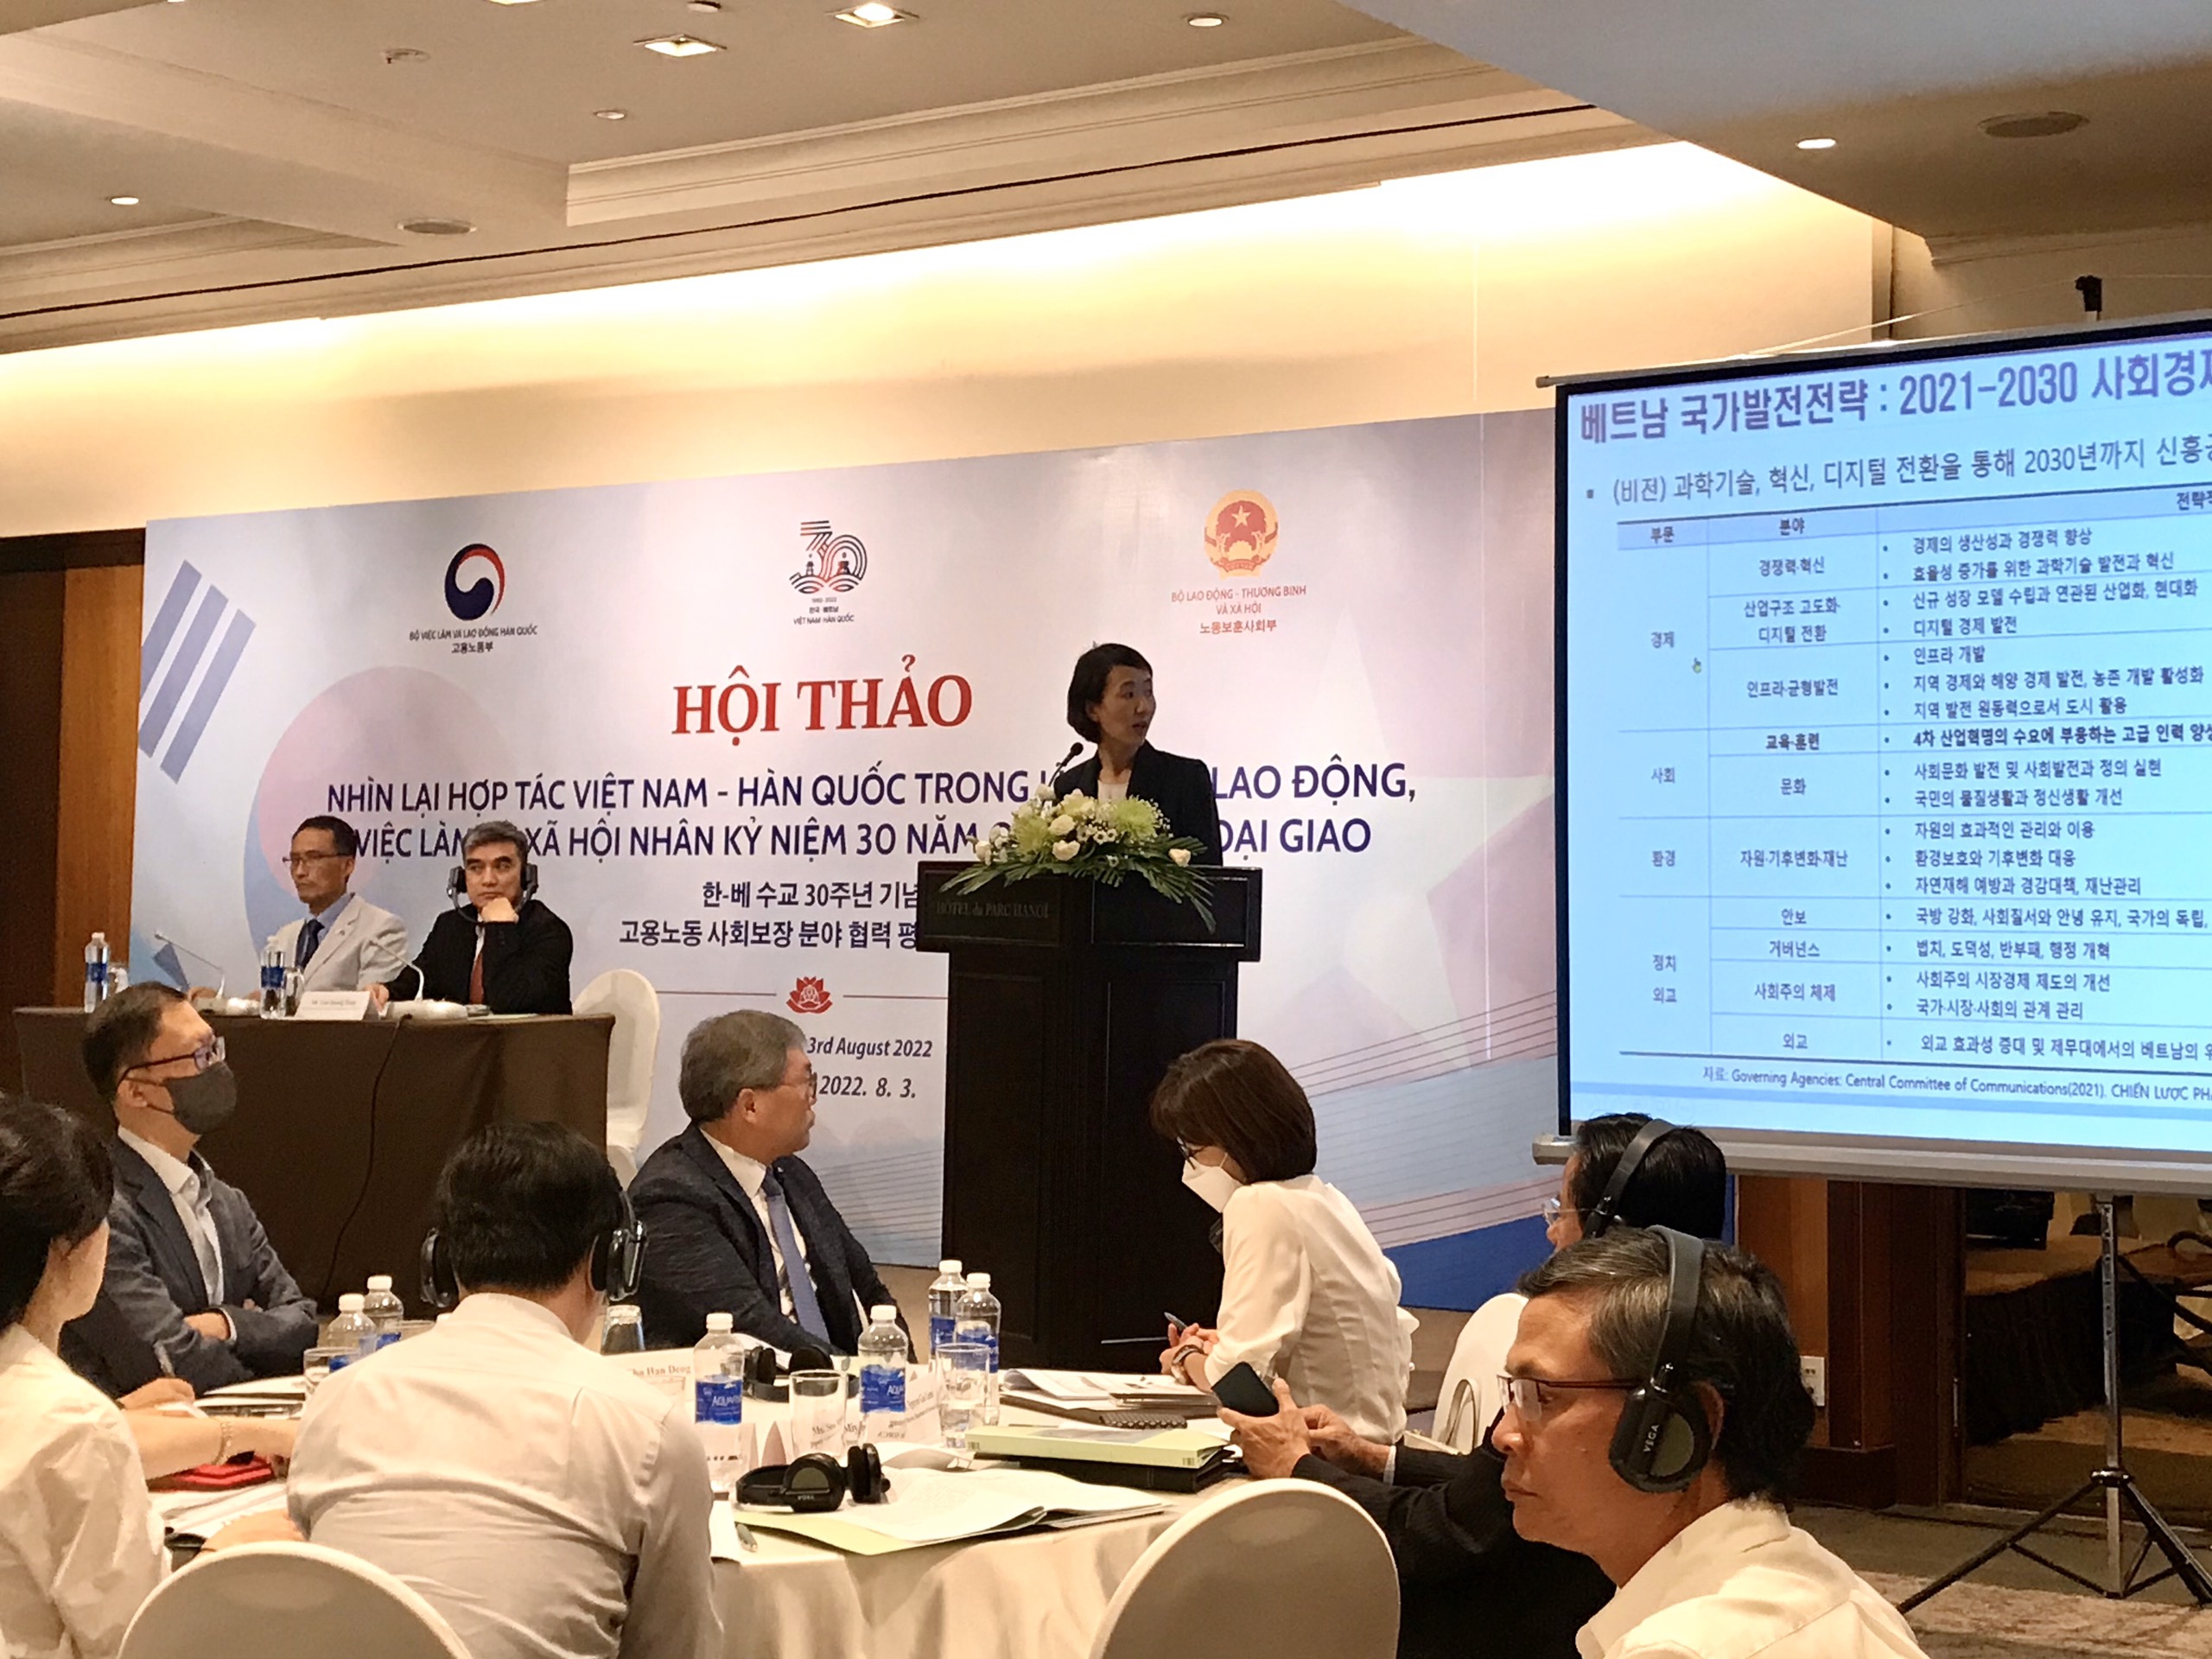 Hội thảo này được tổ chức nhằm đánh giá quan hệ hợp tác giữa Việt Nam và Hàn quốc trong các lĩnh vực việc làm, lao động và an sinh xã hội trong 30 năm vừa qua